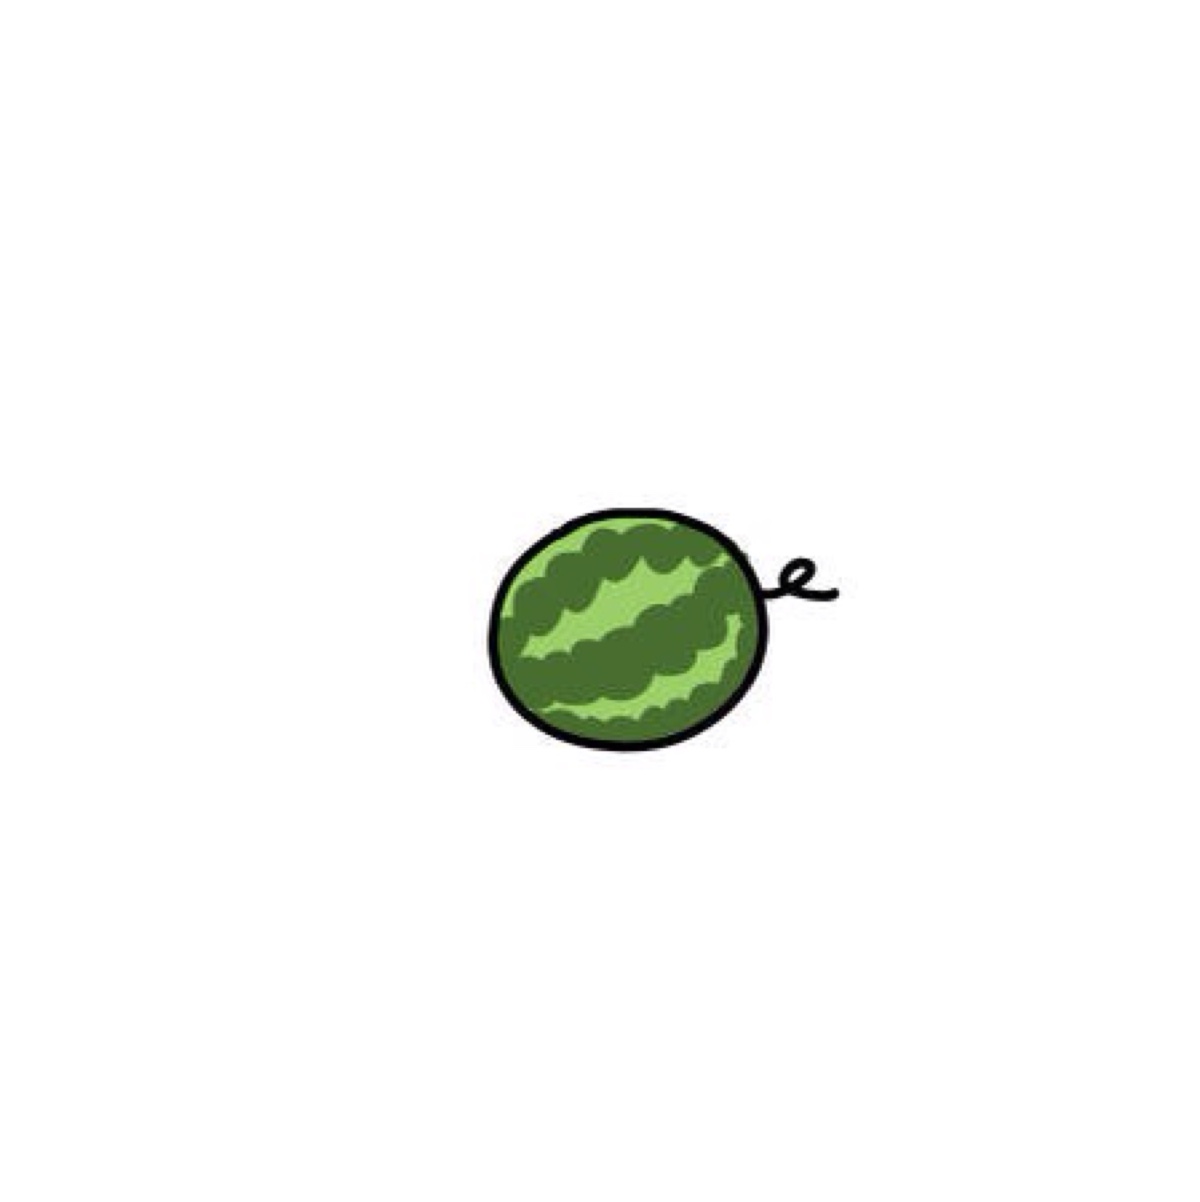 画了一批西瓜系列小头像!你们最喜欢怎么吃?[馋嘴]